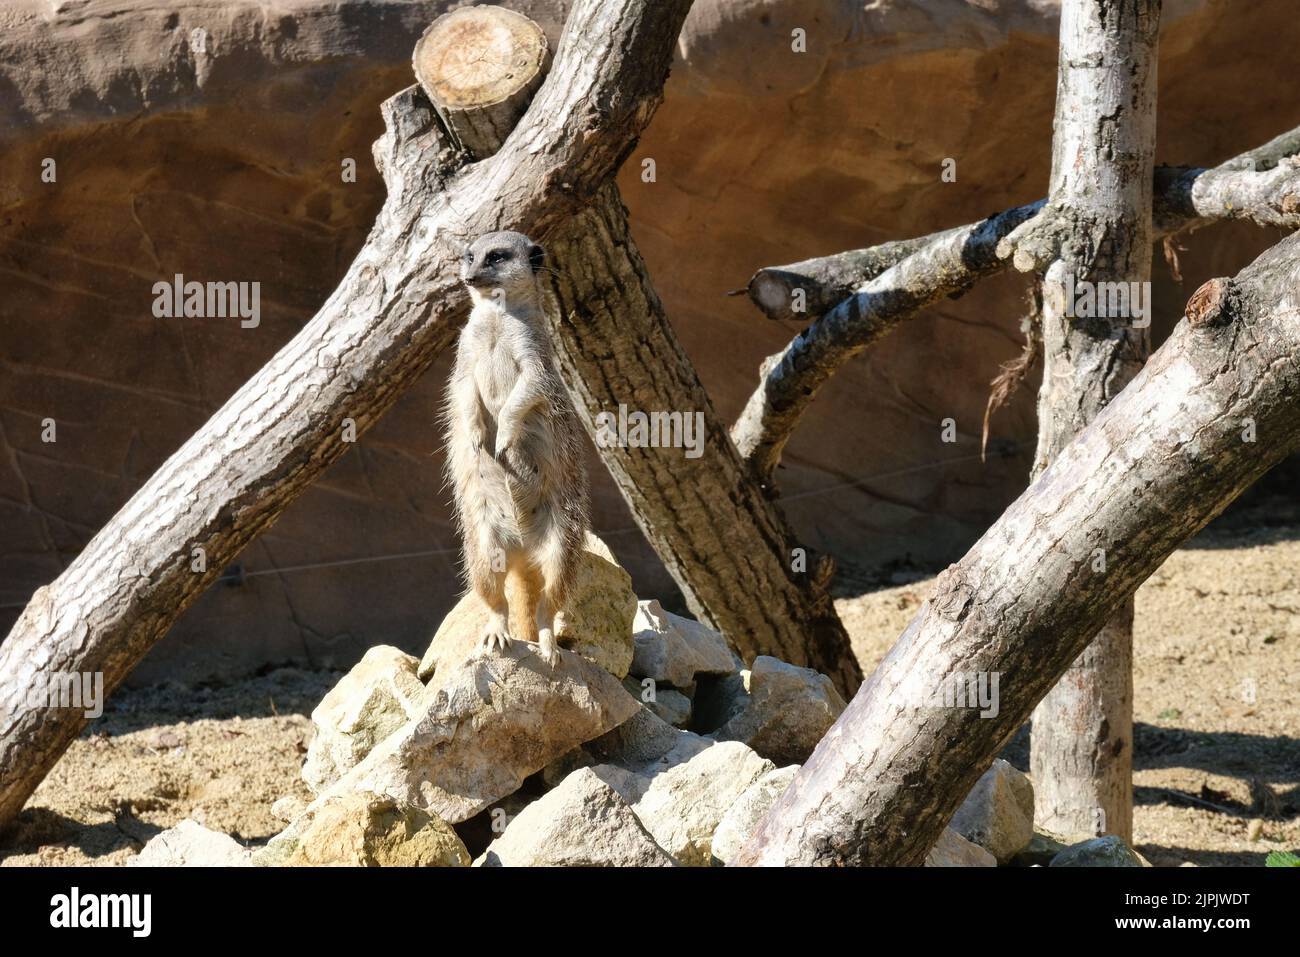 Un suricata suricatta se erige en una posición de observación en su recinto en el zoológico de Blackpool. Foto de stock